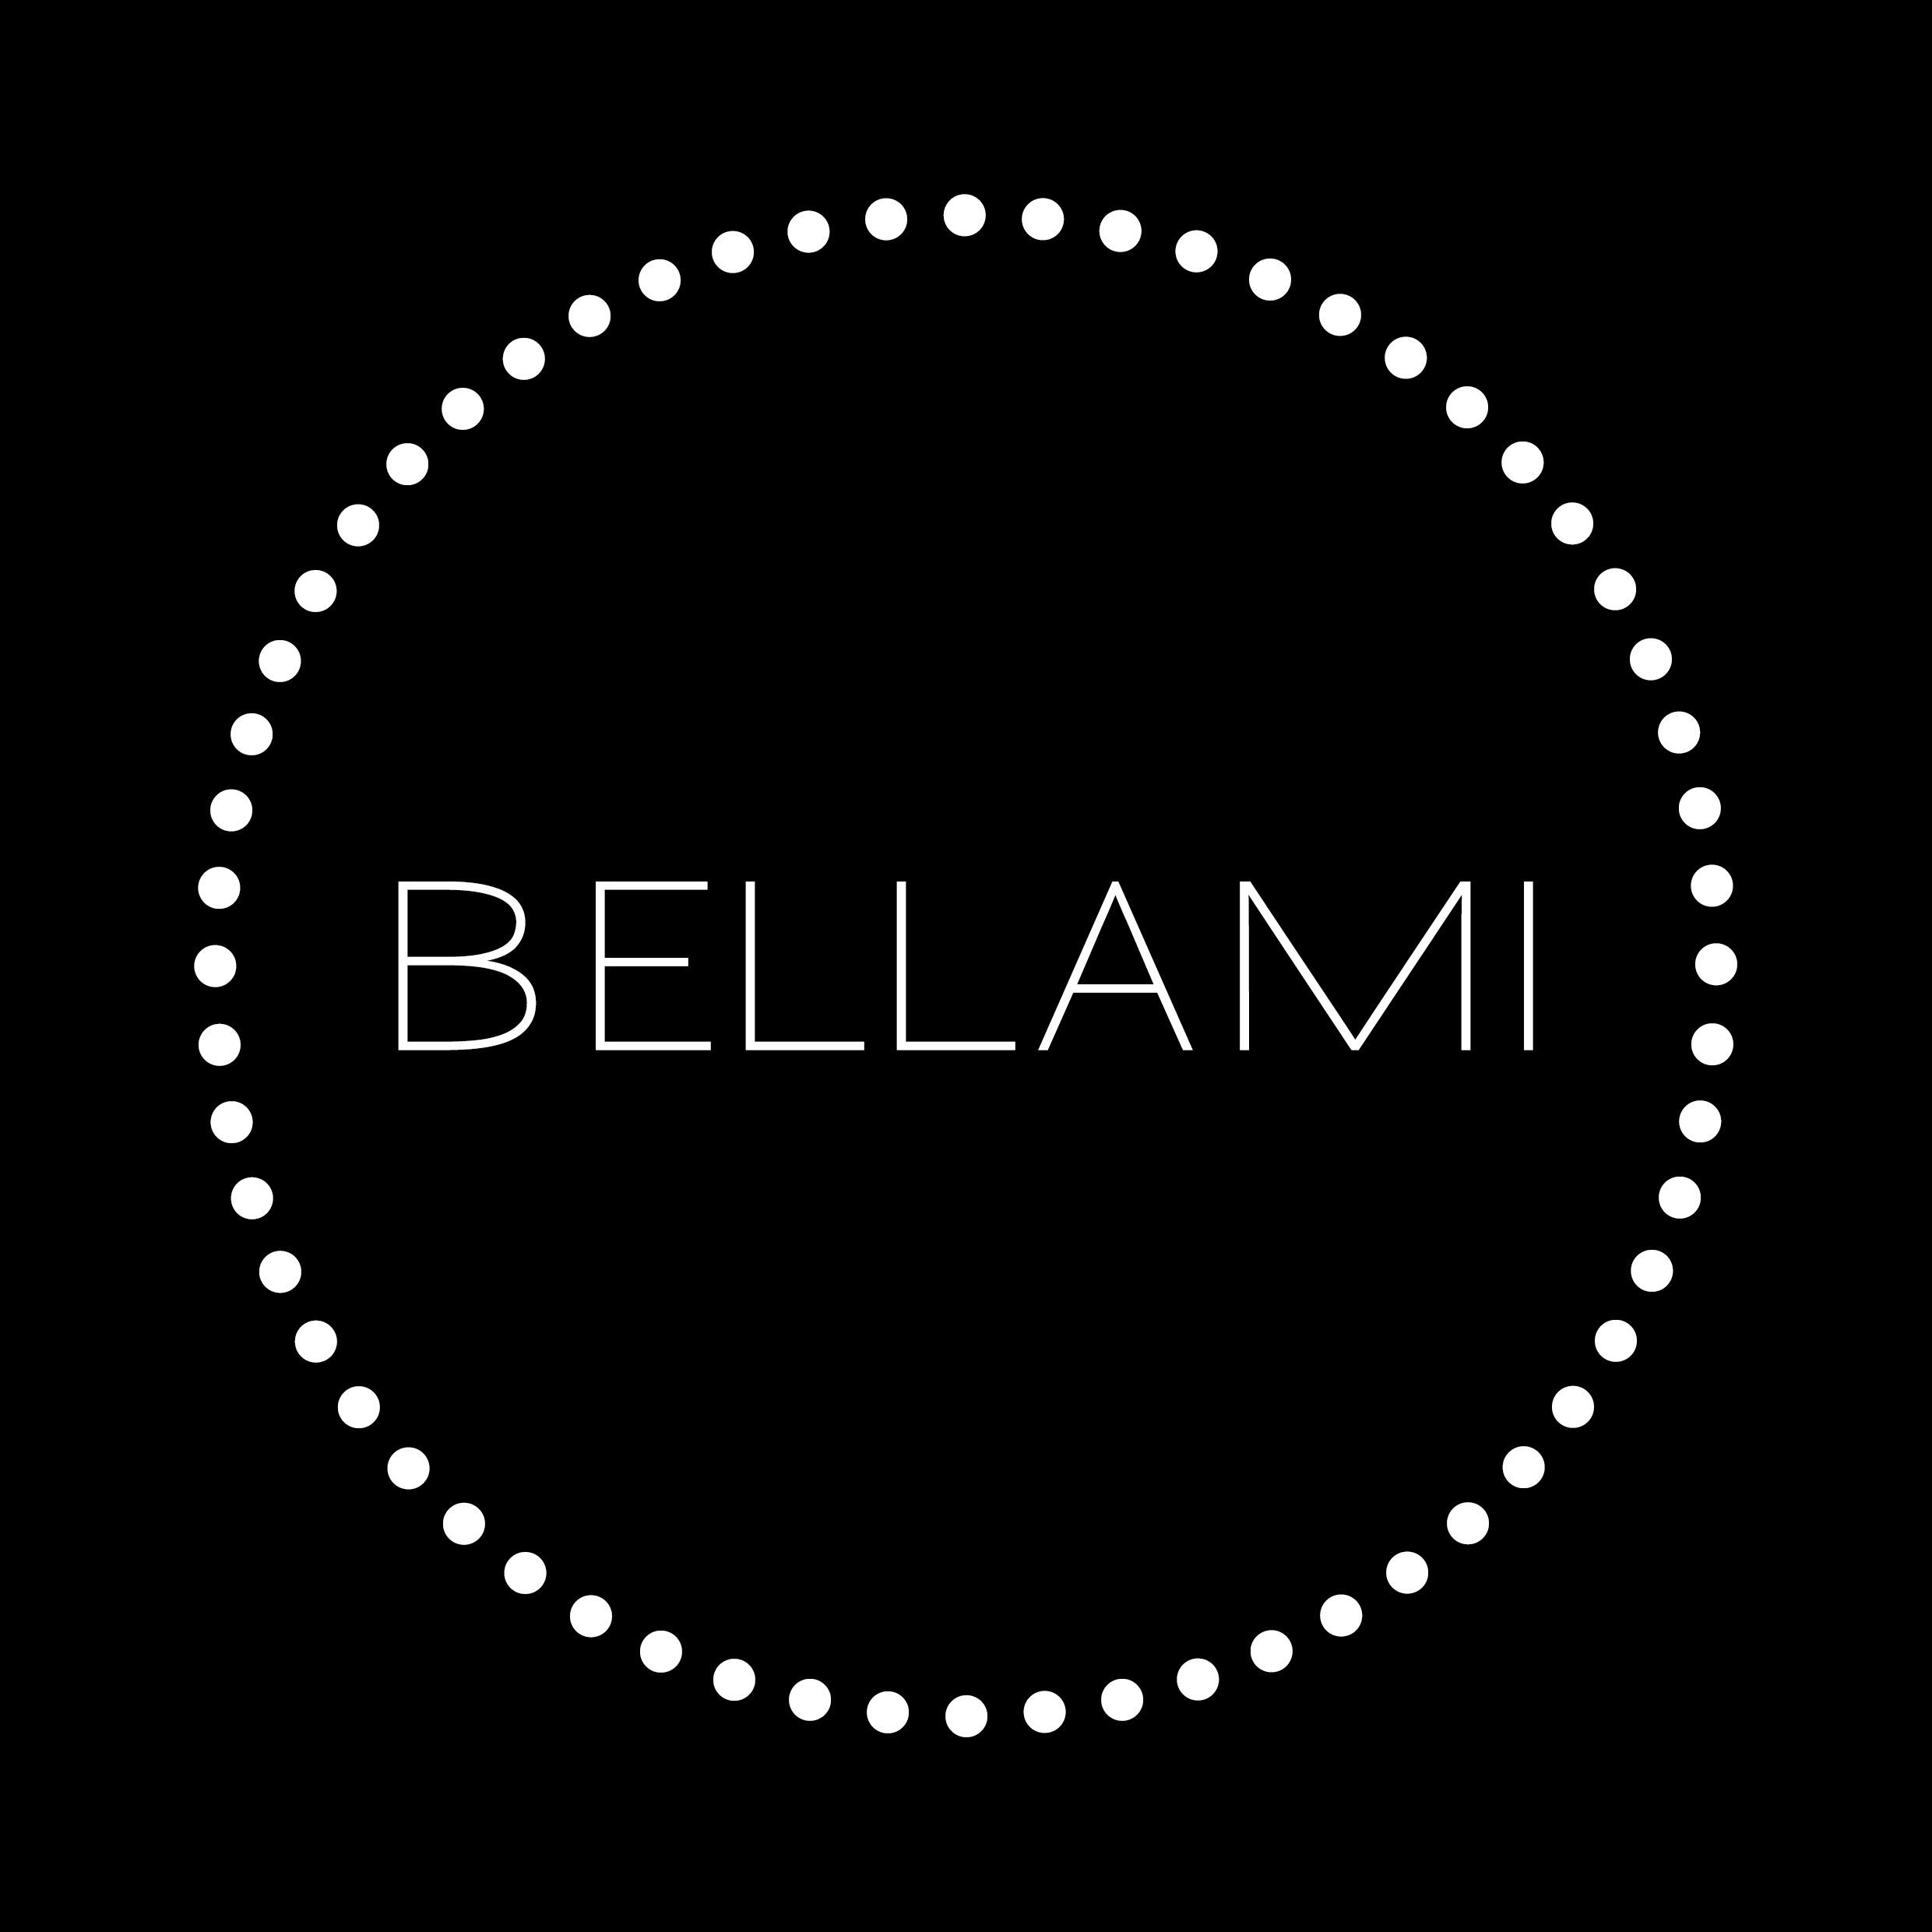 BELLAMI